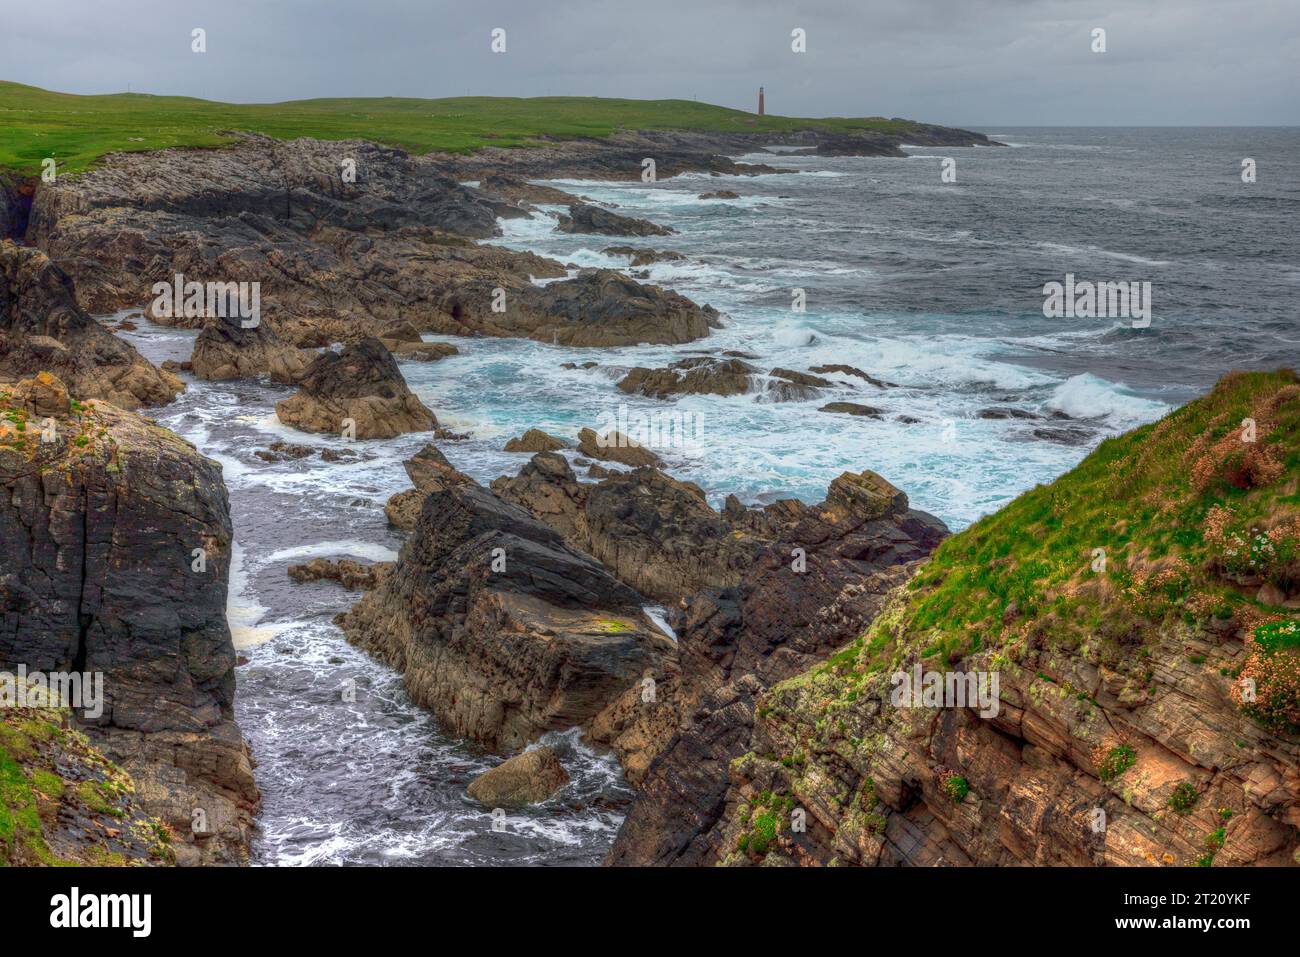 Dun Eistean è un forte medievale in rovina su un'isola di marea al largo della costa dell'Isola di Lewis nelle Ebridi esterne della Scozia. Foto Stock